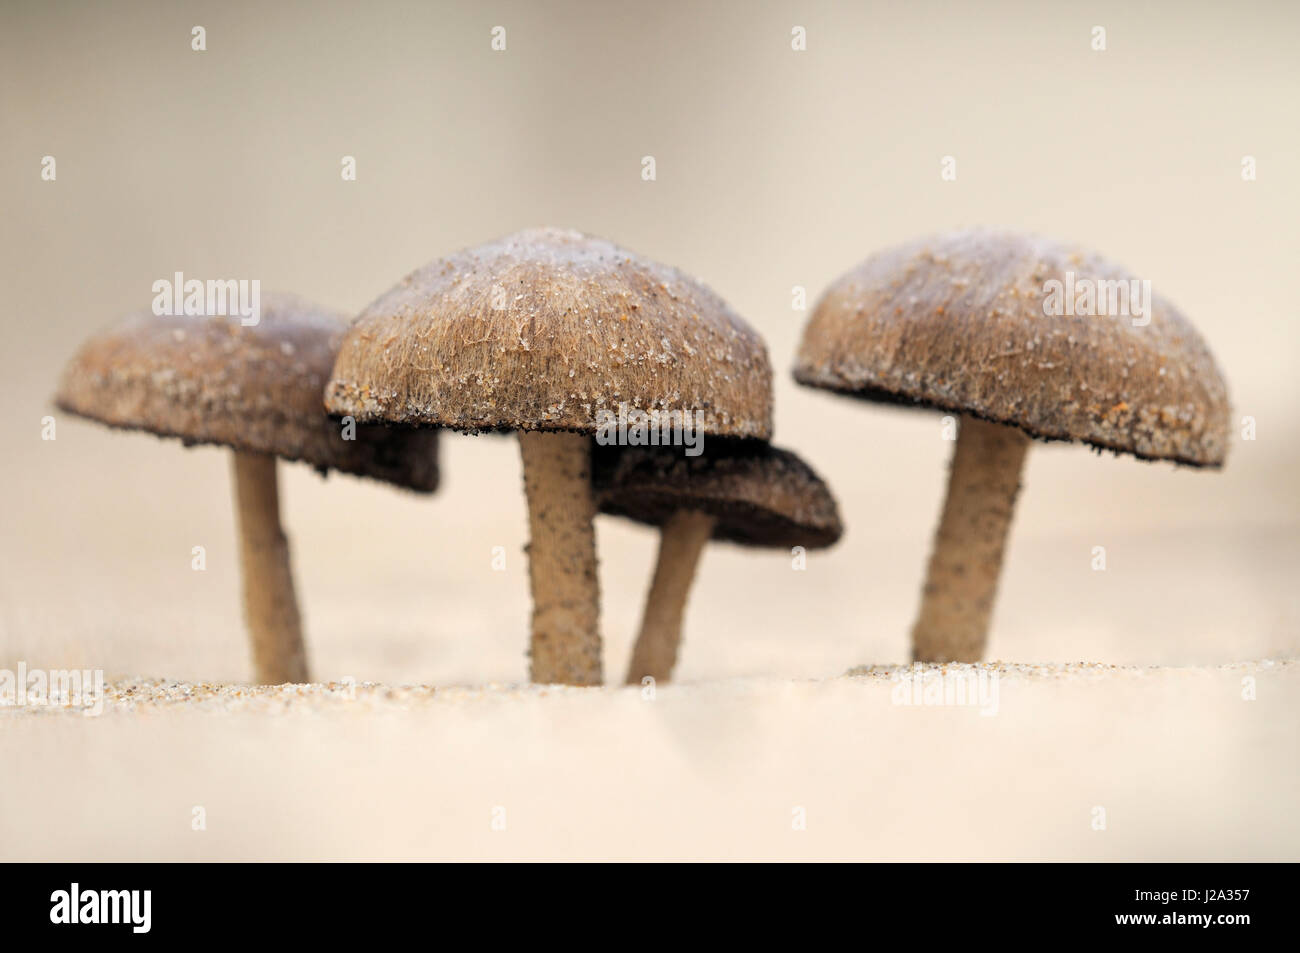 Four mushroom of Dune brittlestem in sand dunes of Kennemerstrand Stock Photo